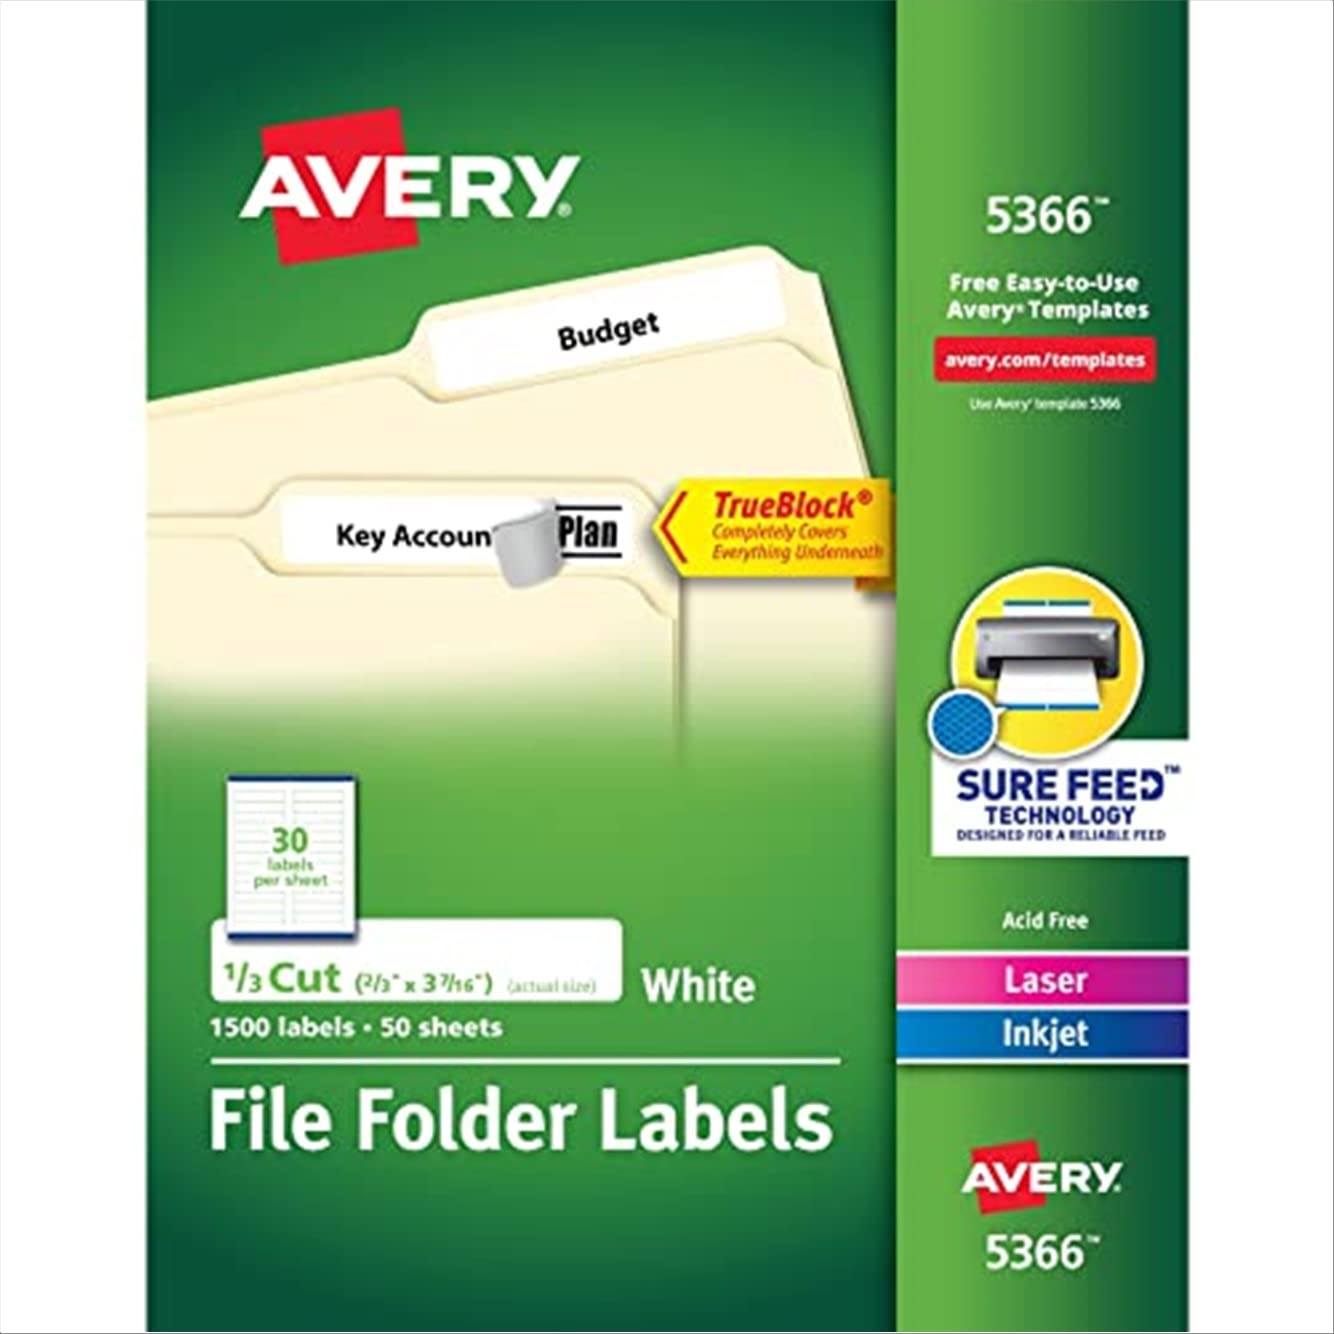 Avery Etiquetas para carpetas de archivos para impresoras láser y de chorro de tinta con tecnología TrueBlock